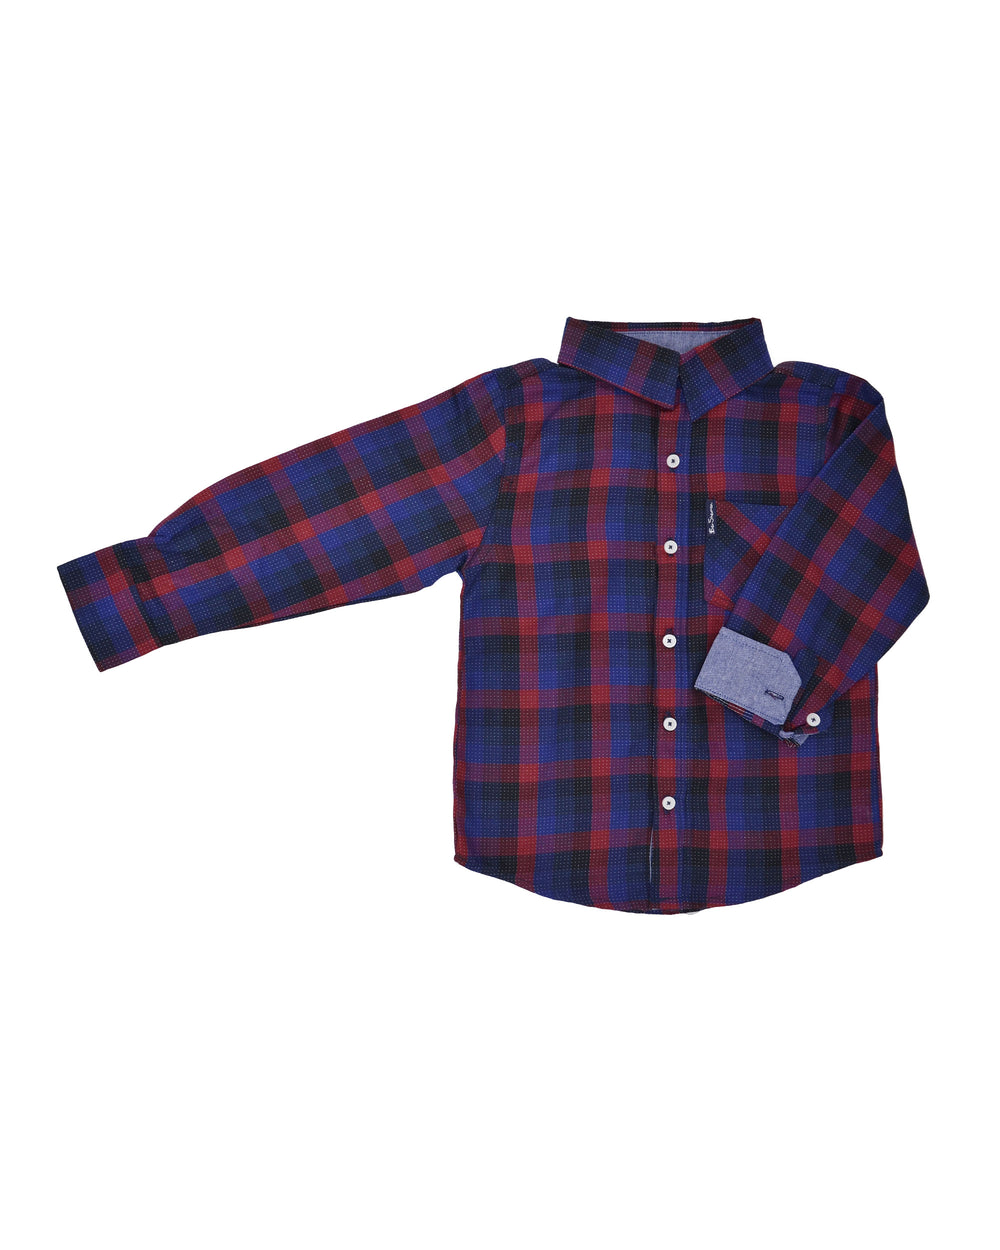 Boys' Black/Blue/Red Plaid Button-Down Shirt (Sizes 4-7) - Ben Sherman